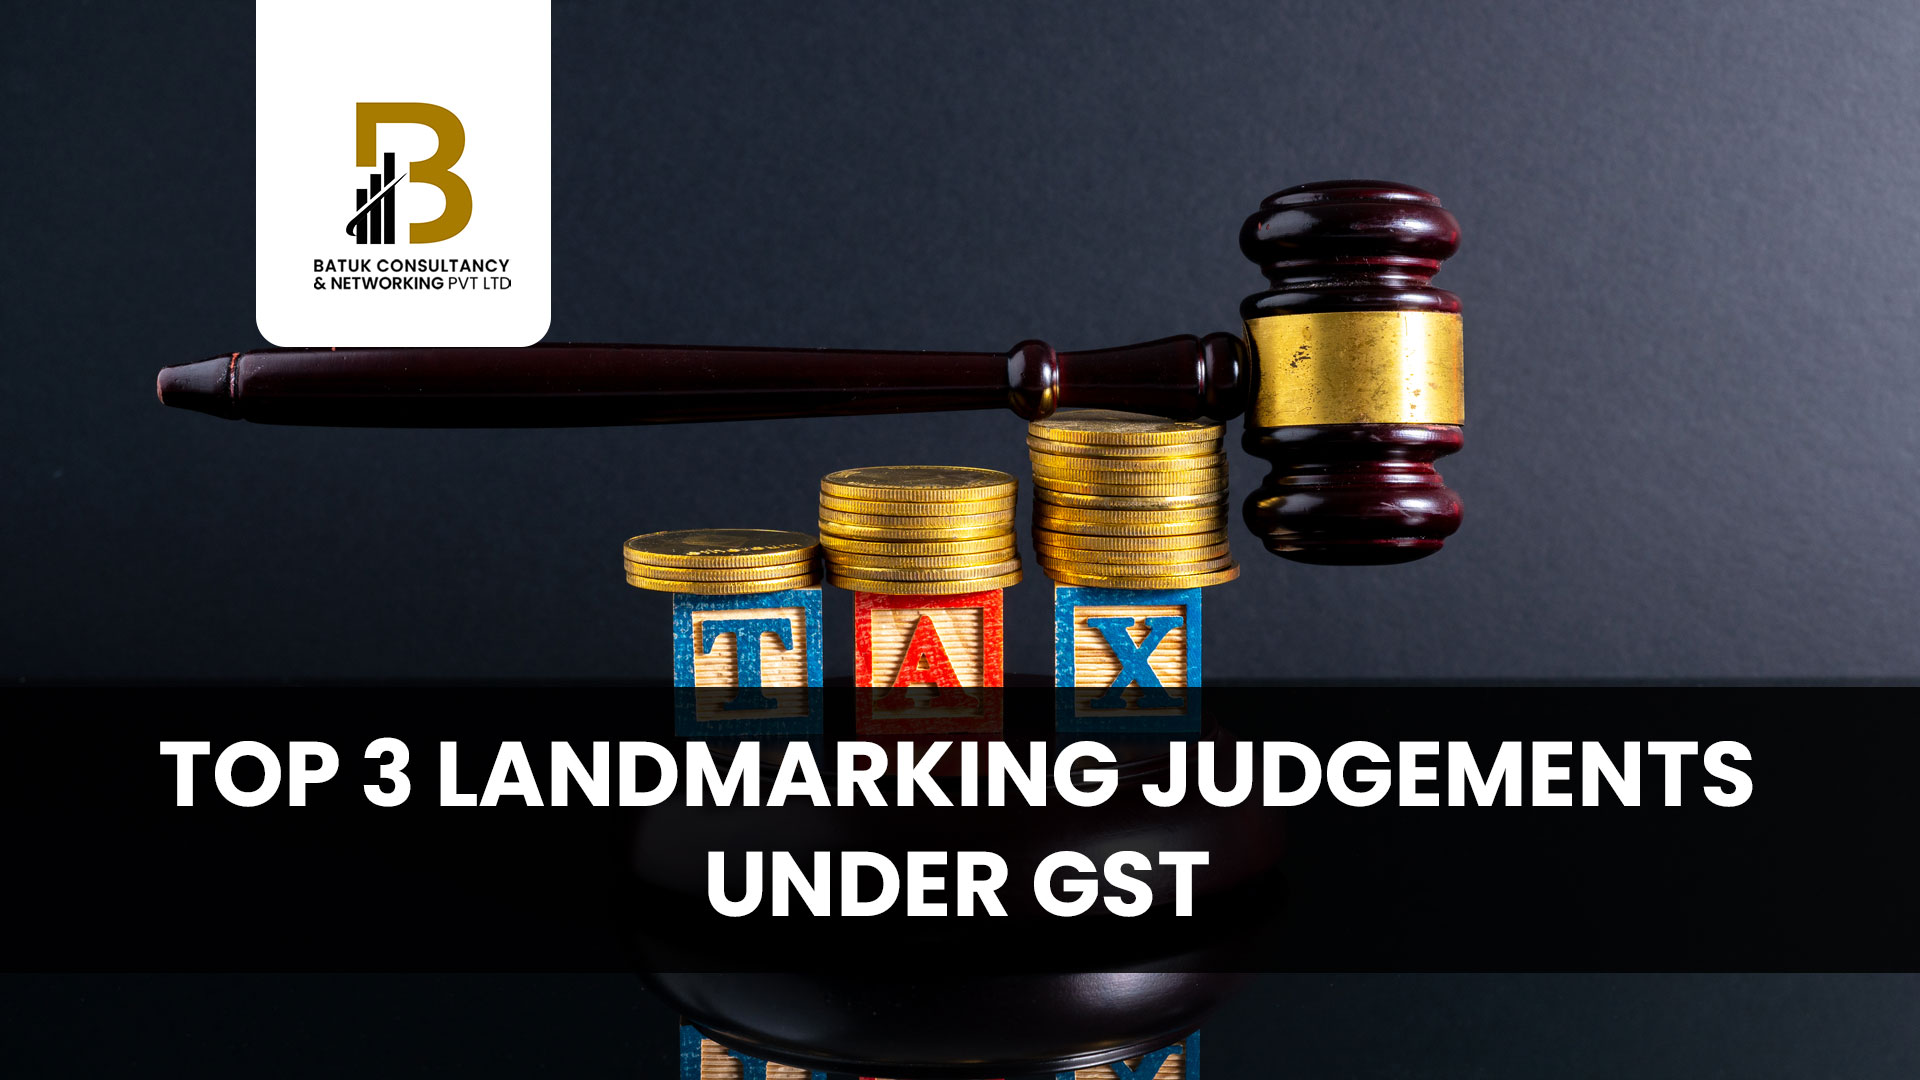 Top 3 Landmarking Judgements under GST